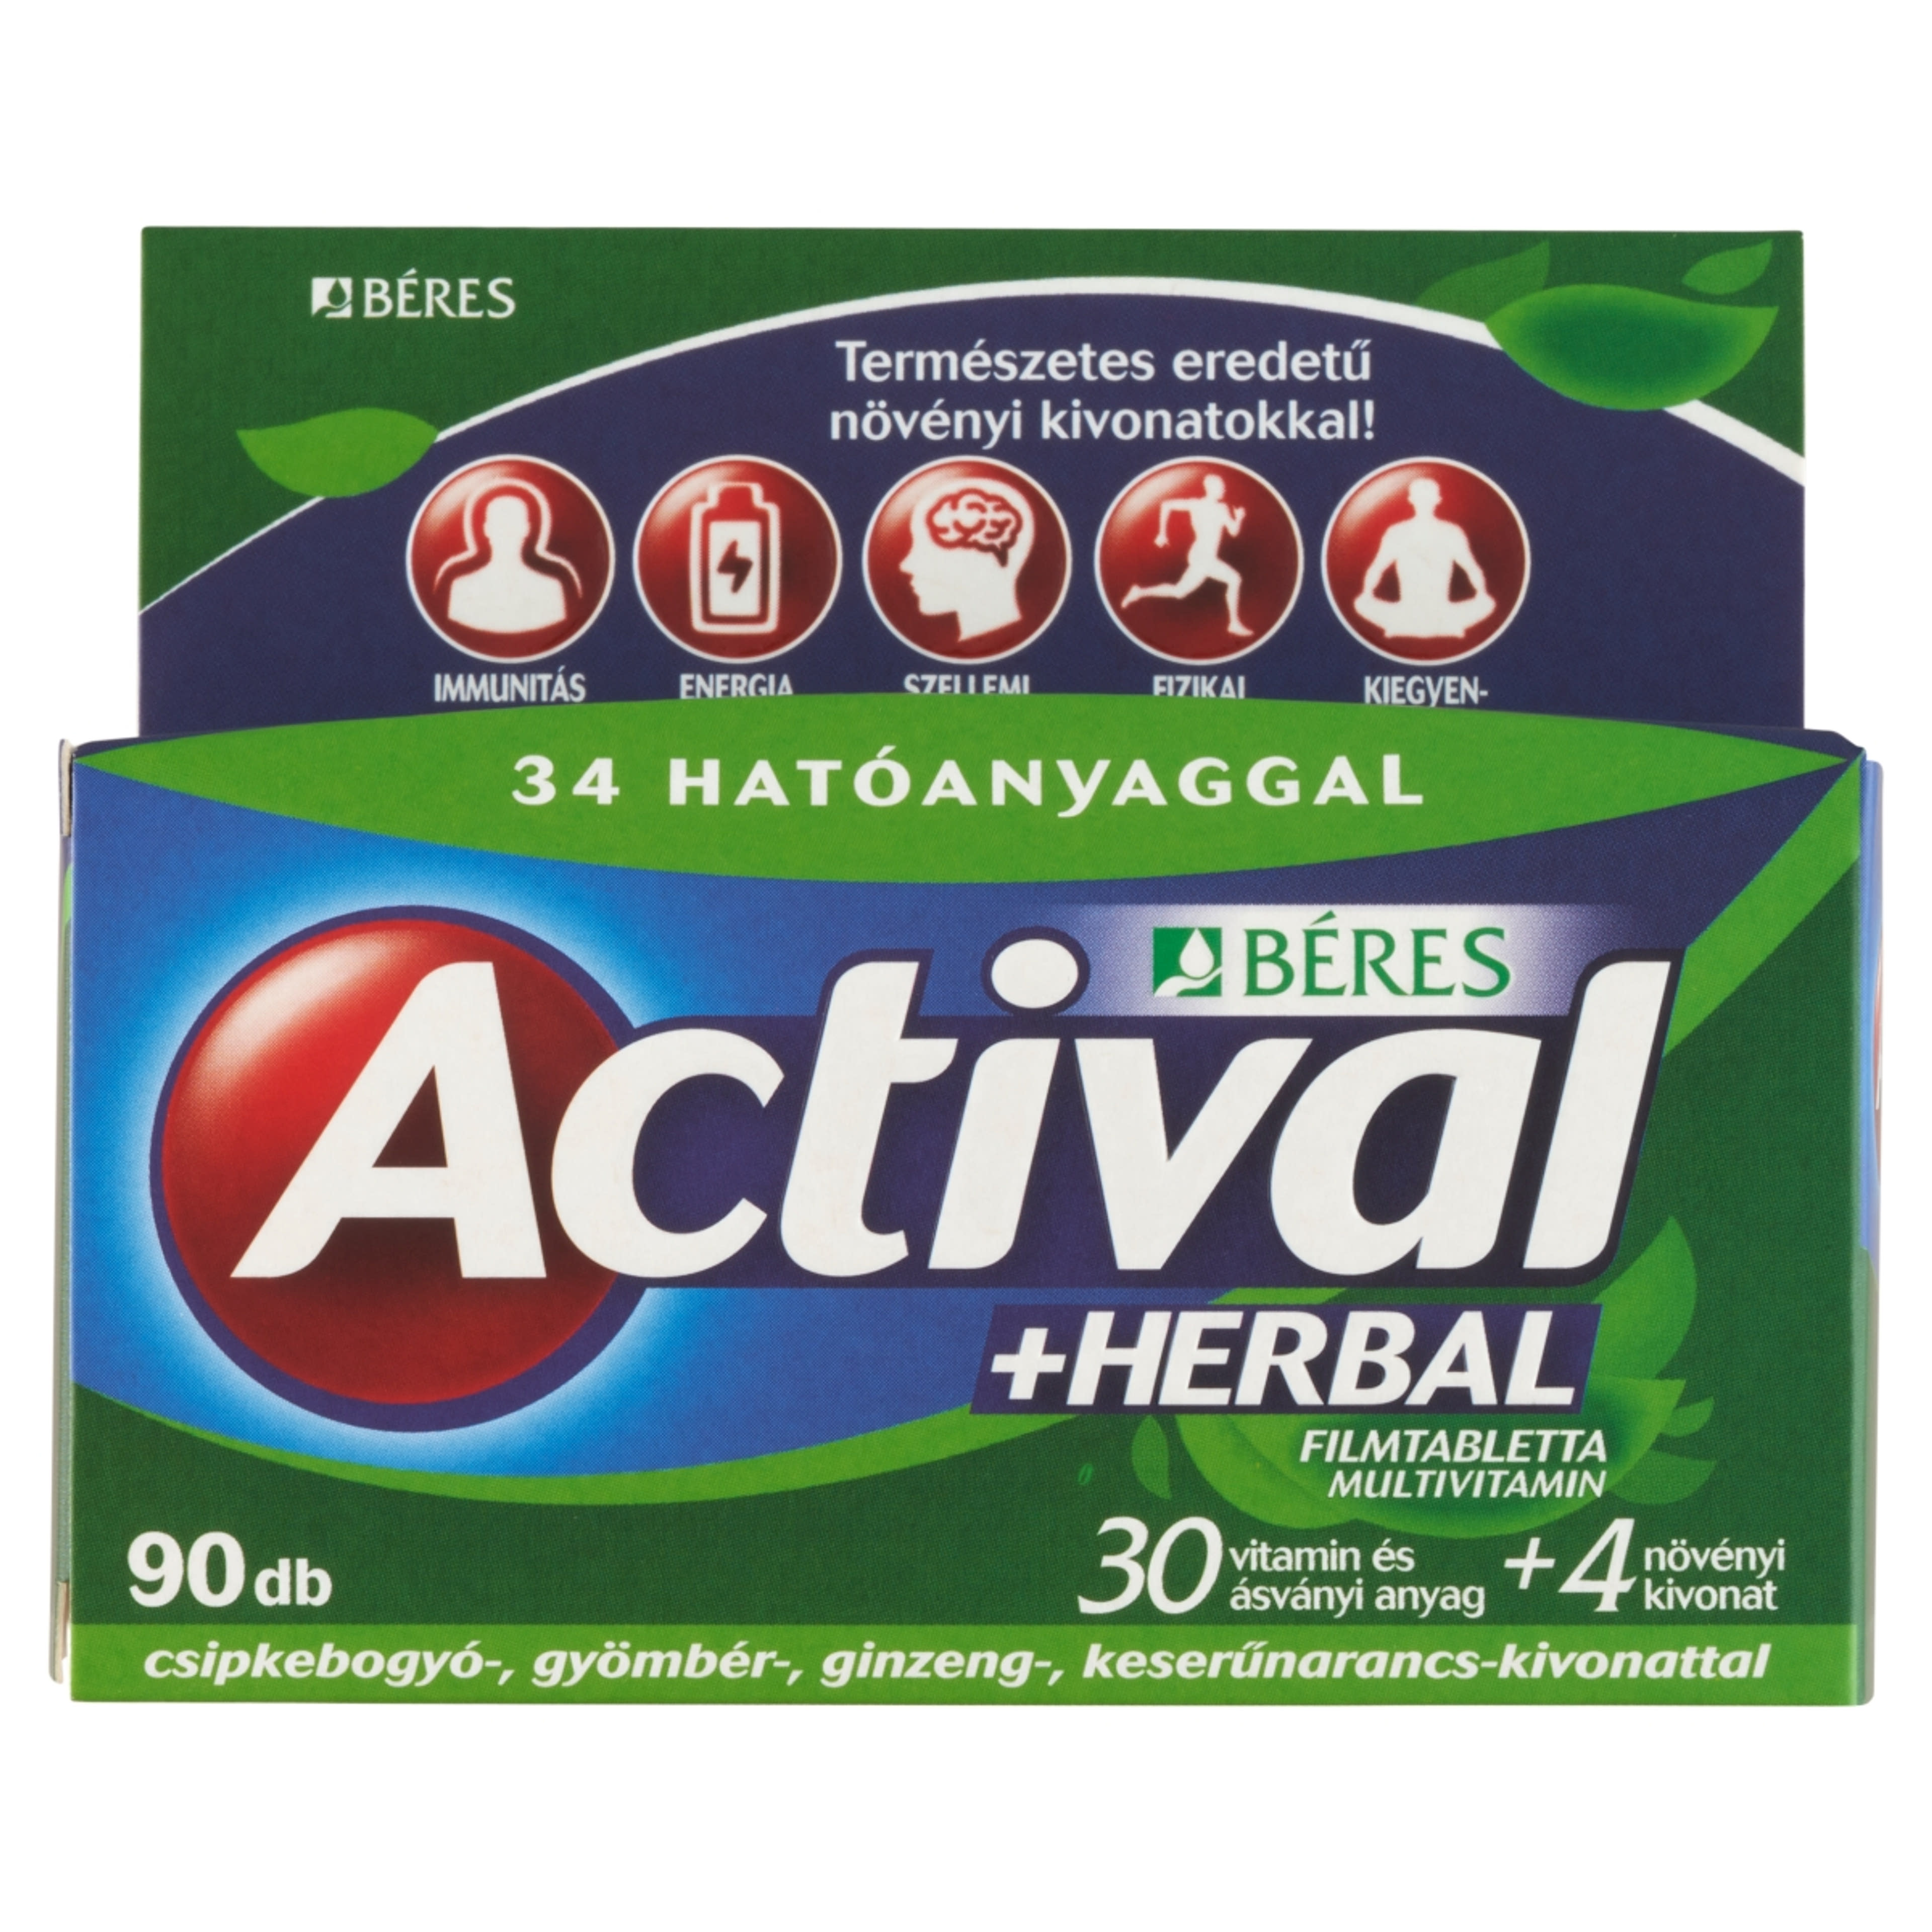 Actival Herbal multivitamin filmtabletta - 90 db